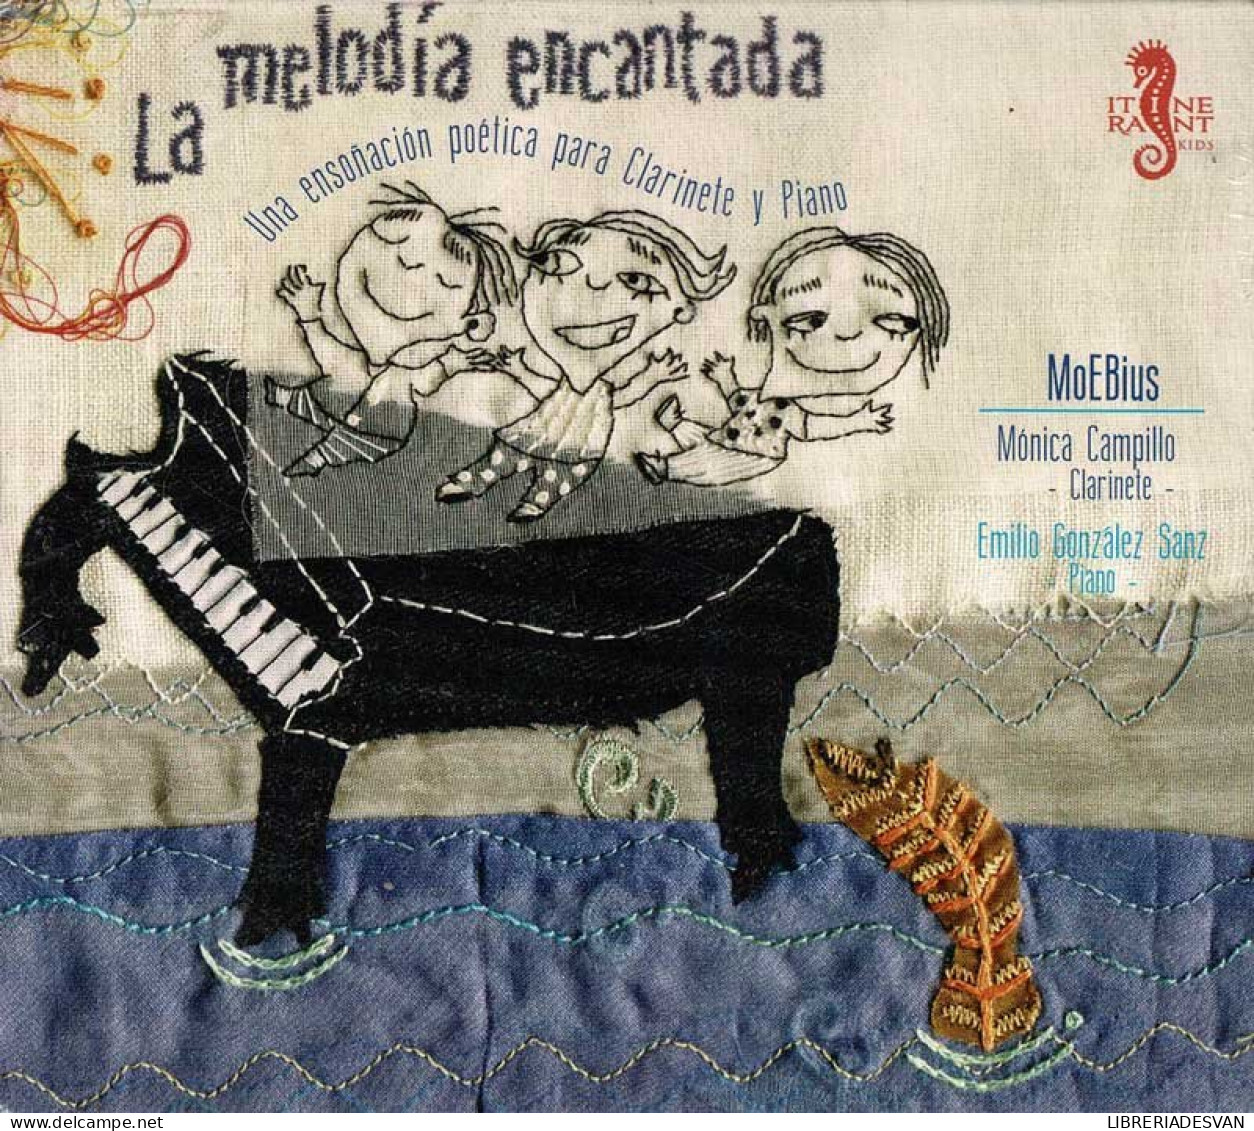 MoEBius - La Melodía Encantada. Una Ensoñación Poética Para Clarinete Y Piano. CD - Classical